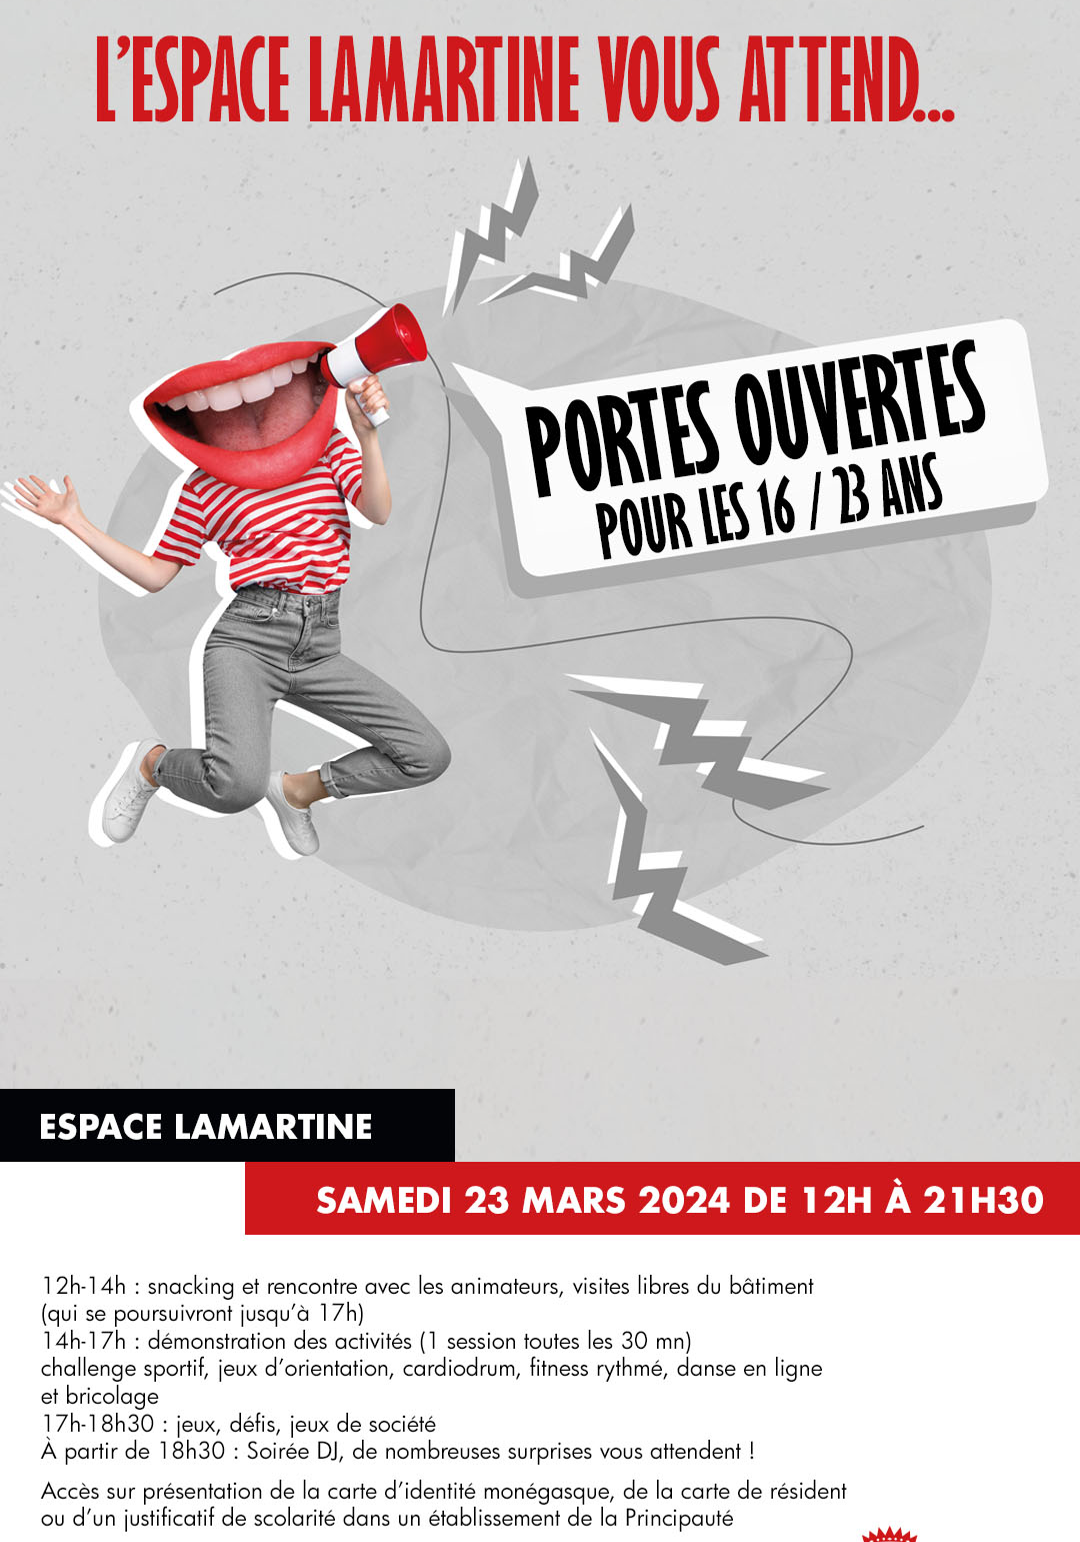 Affiche de l'événement Portes ouvertes de l'Espace Lamartine pour les 16/23 ans